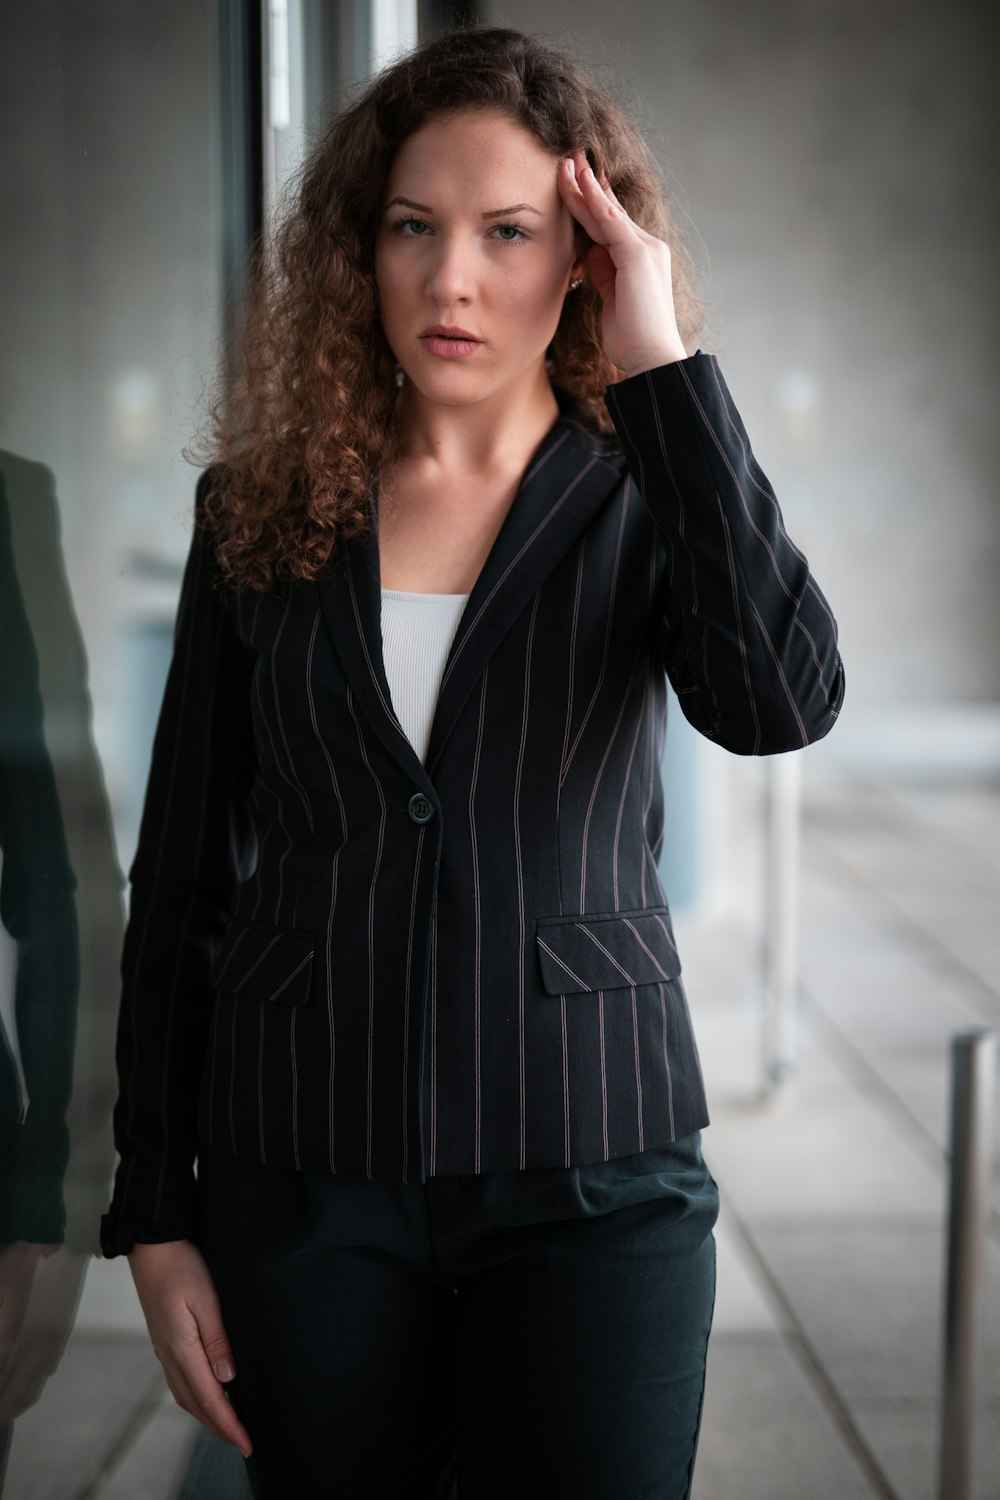 femme en blazer rayé noir et blanc photo – Photo Deutschland Gratuite sur  Unsplash